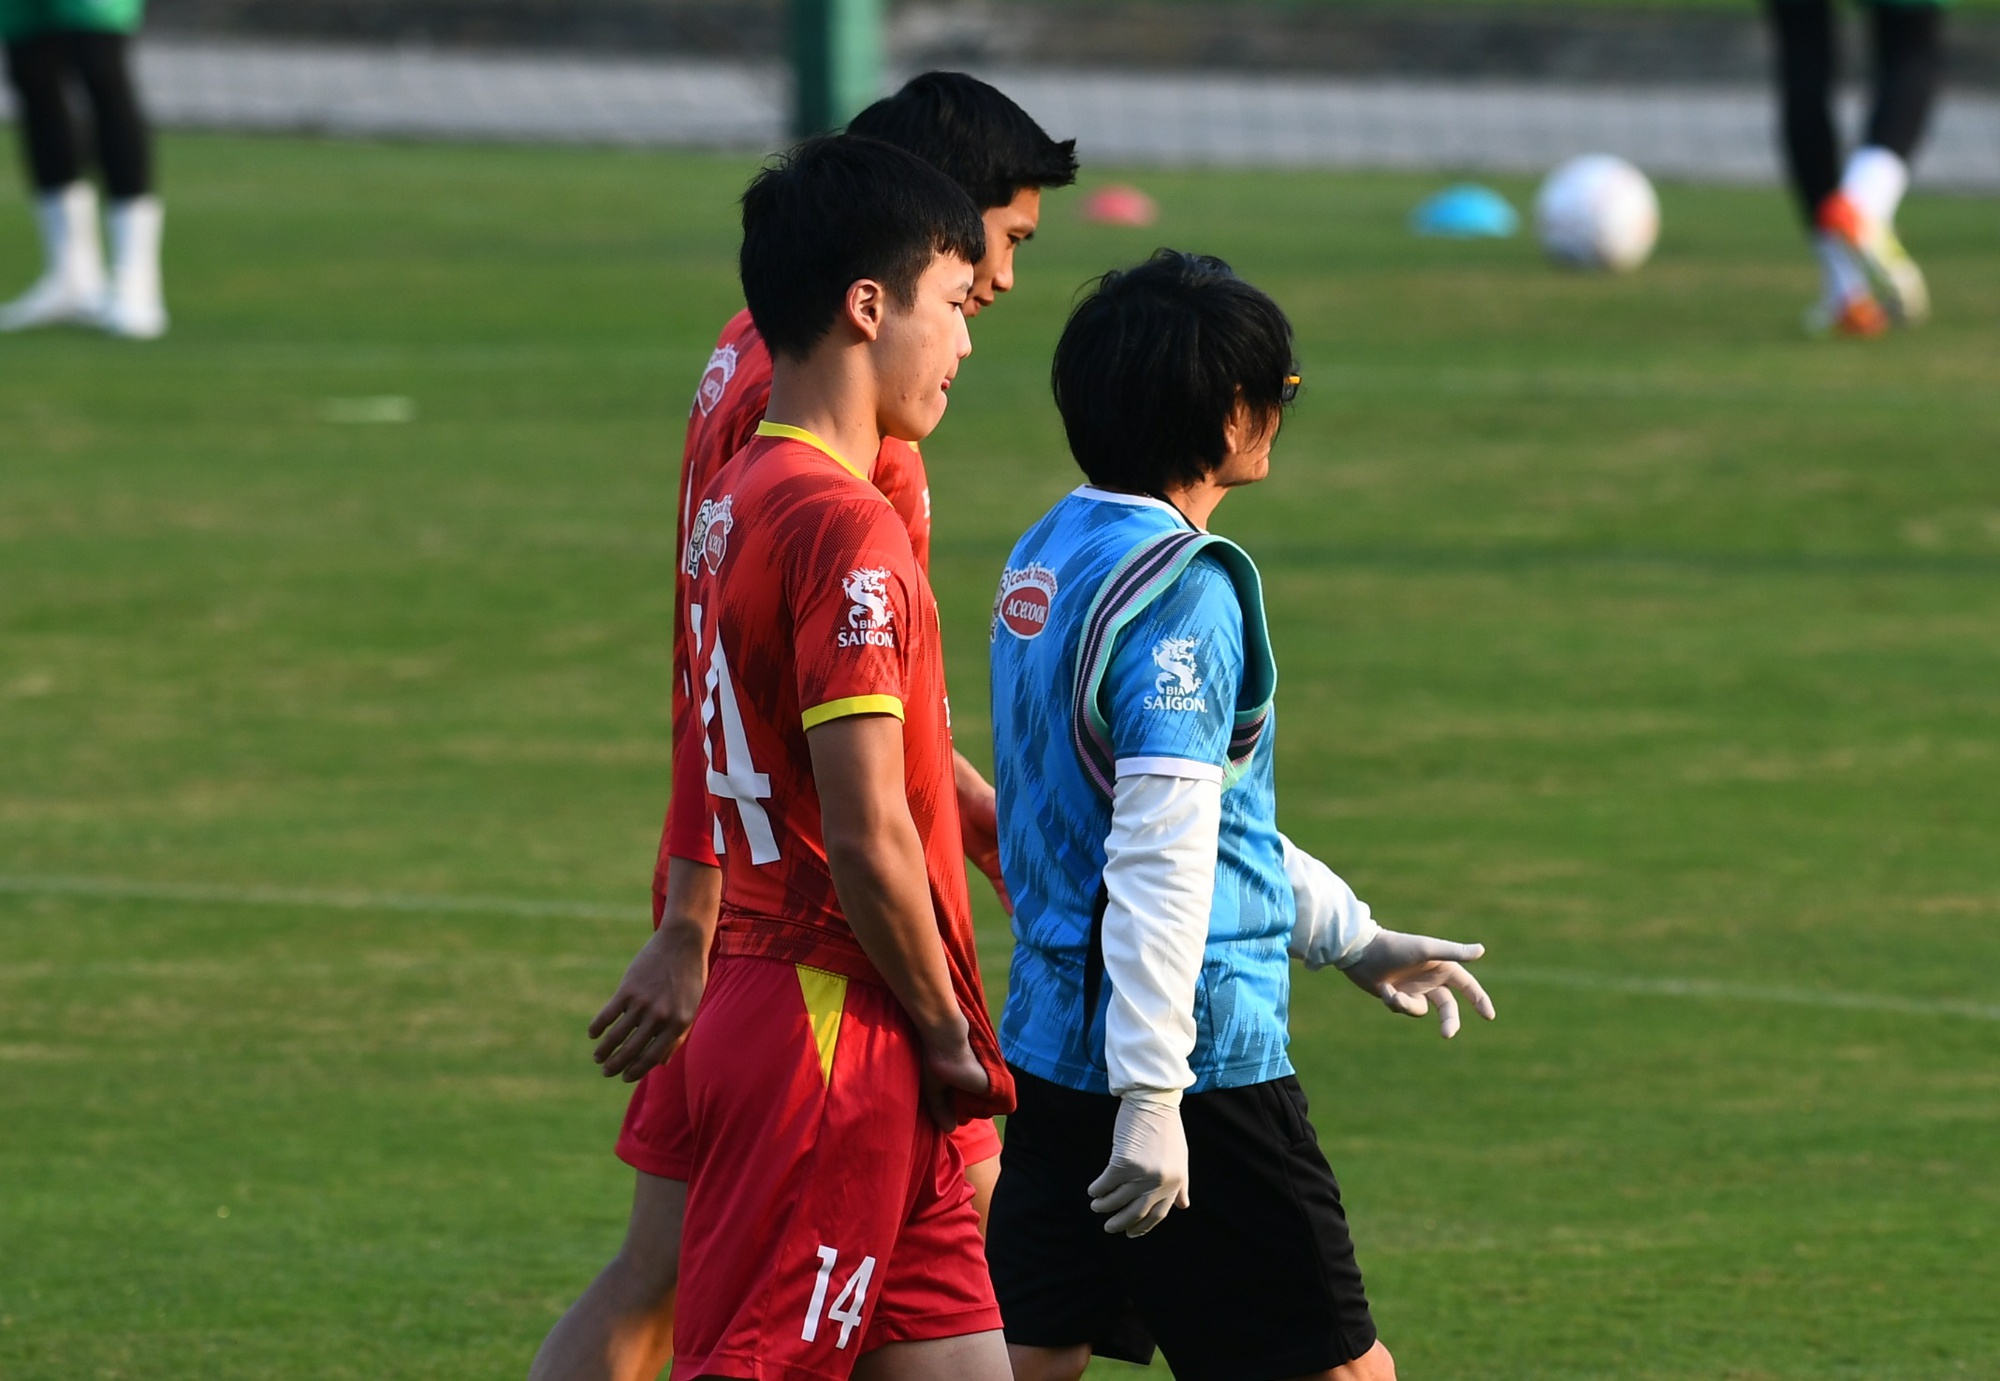 HLV Park Hang-seo cạn lời, cầu thủ ĐT Việt Nam bật cười với bài tập chóng mặt - Ảnh 5.